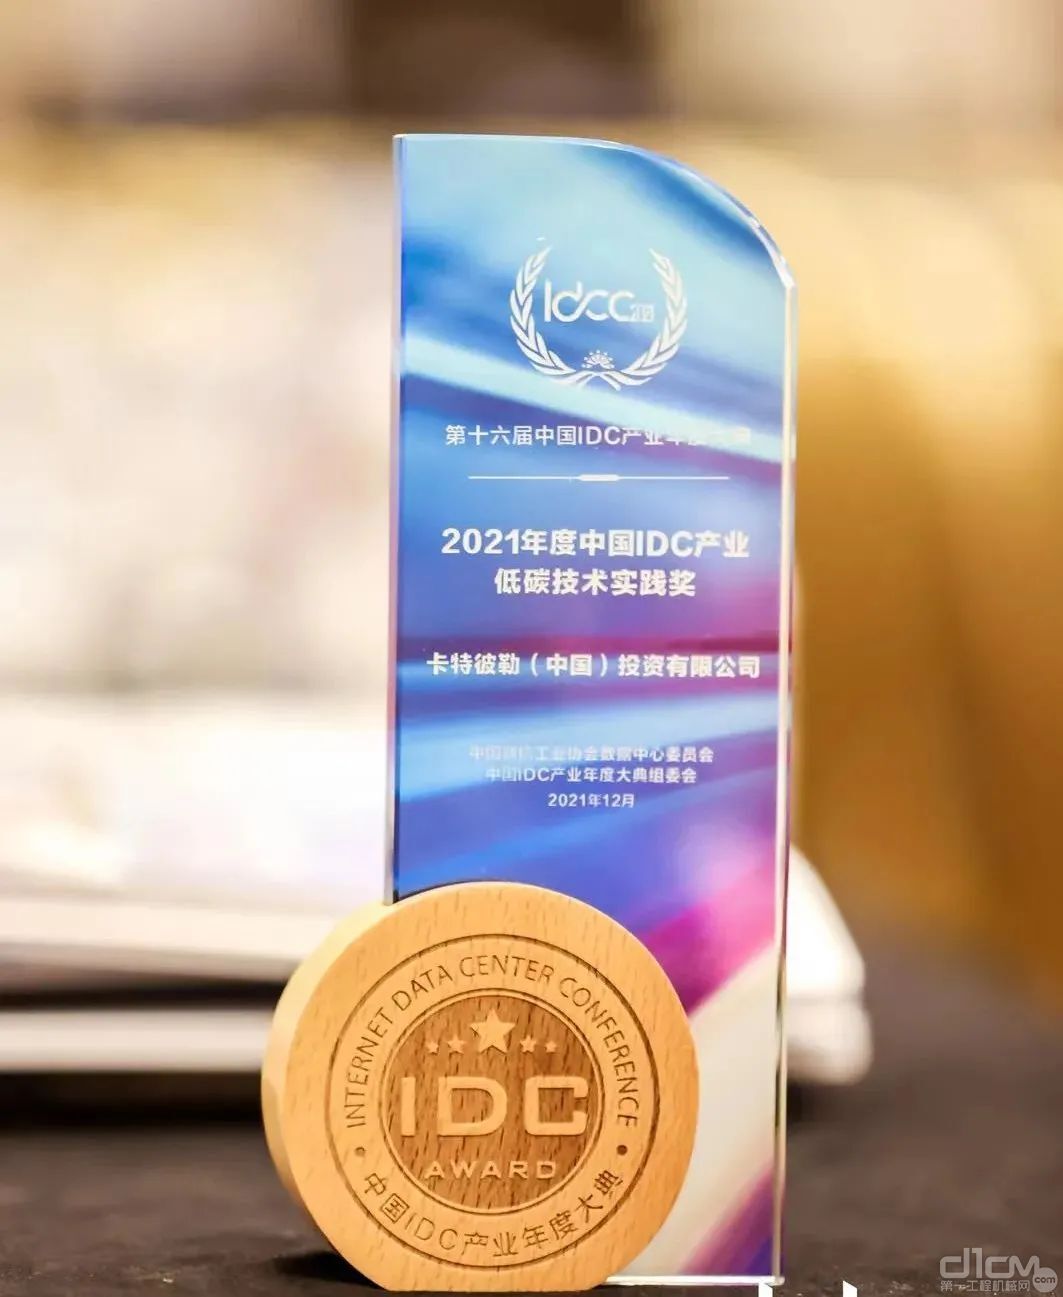 卡特彼勒荣获 “2021年度中国IDC产业低碳技术实践奖”